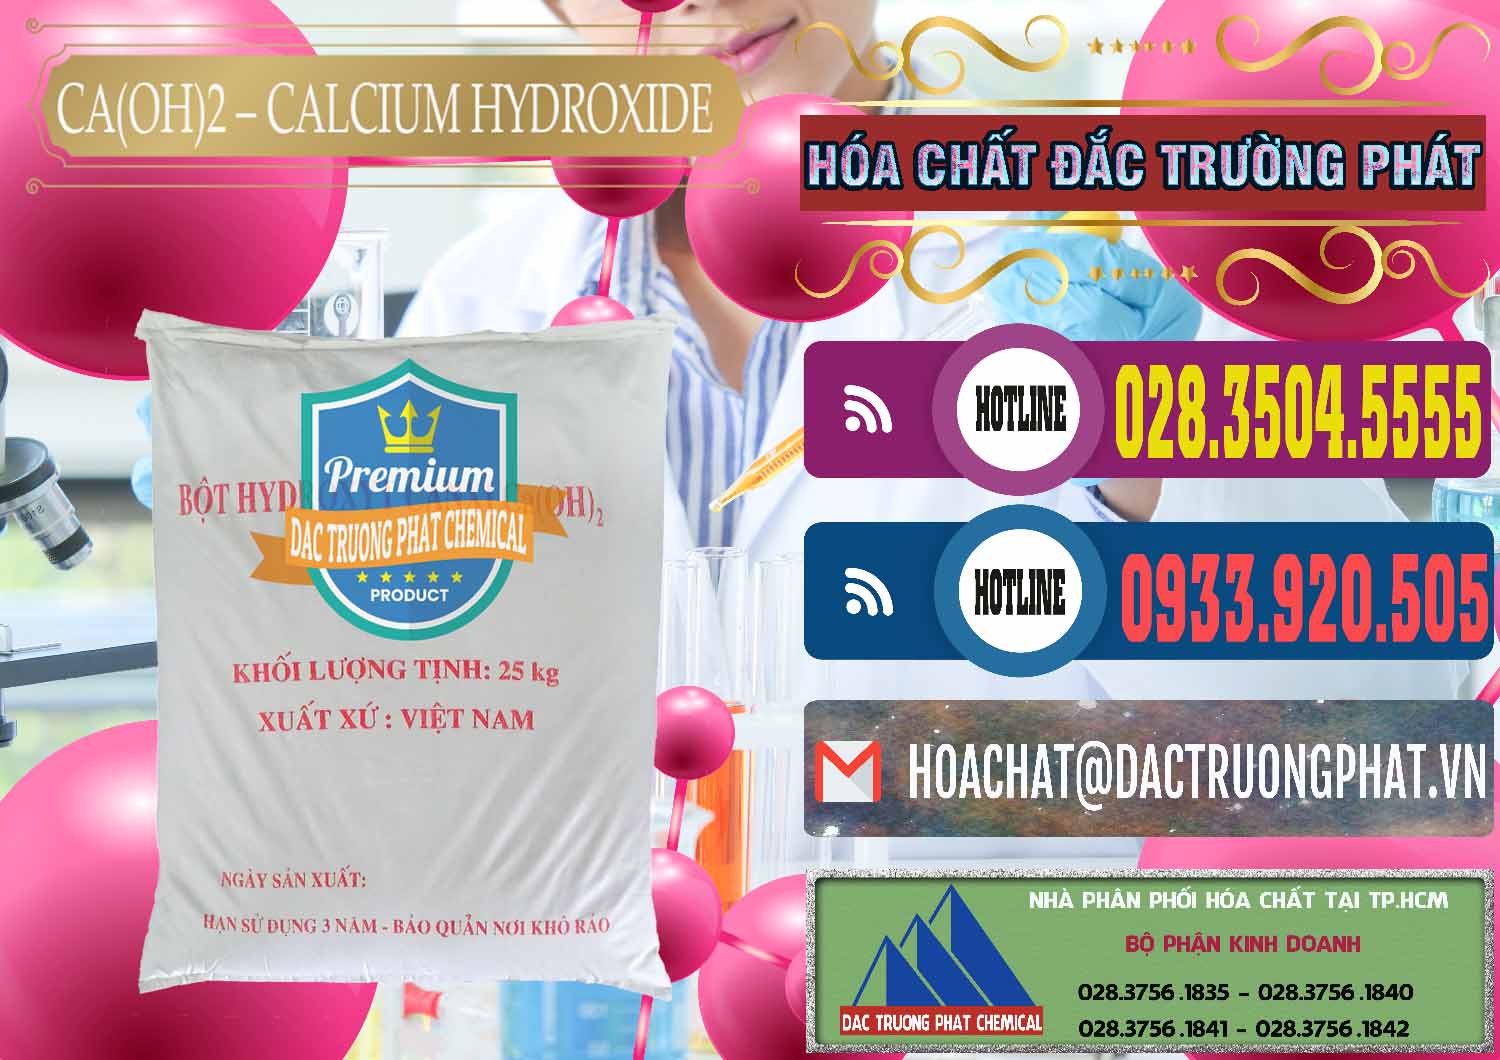 Phân phối _ cung cấp Ca(OH)2 - Calcium Hydroxide Việt Nam - 0186 - Công ty bán & phân phối hóa chất tại TP.HCM - muabanhoachat.com.vn